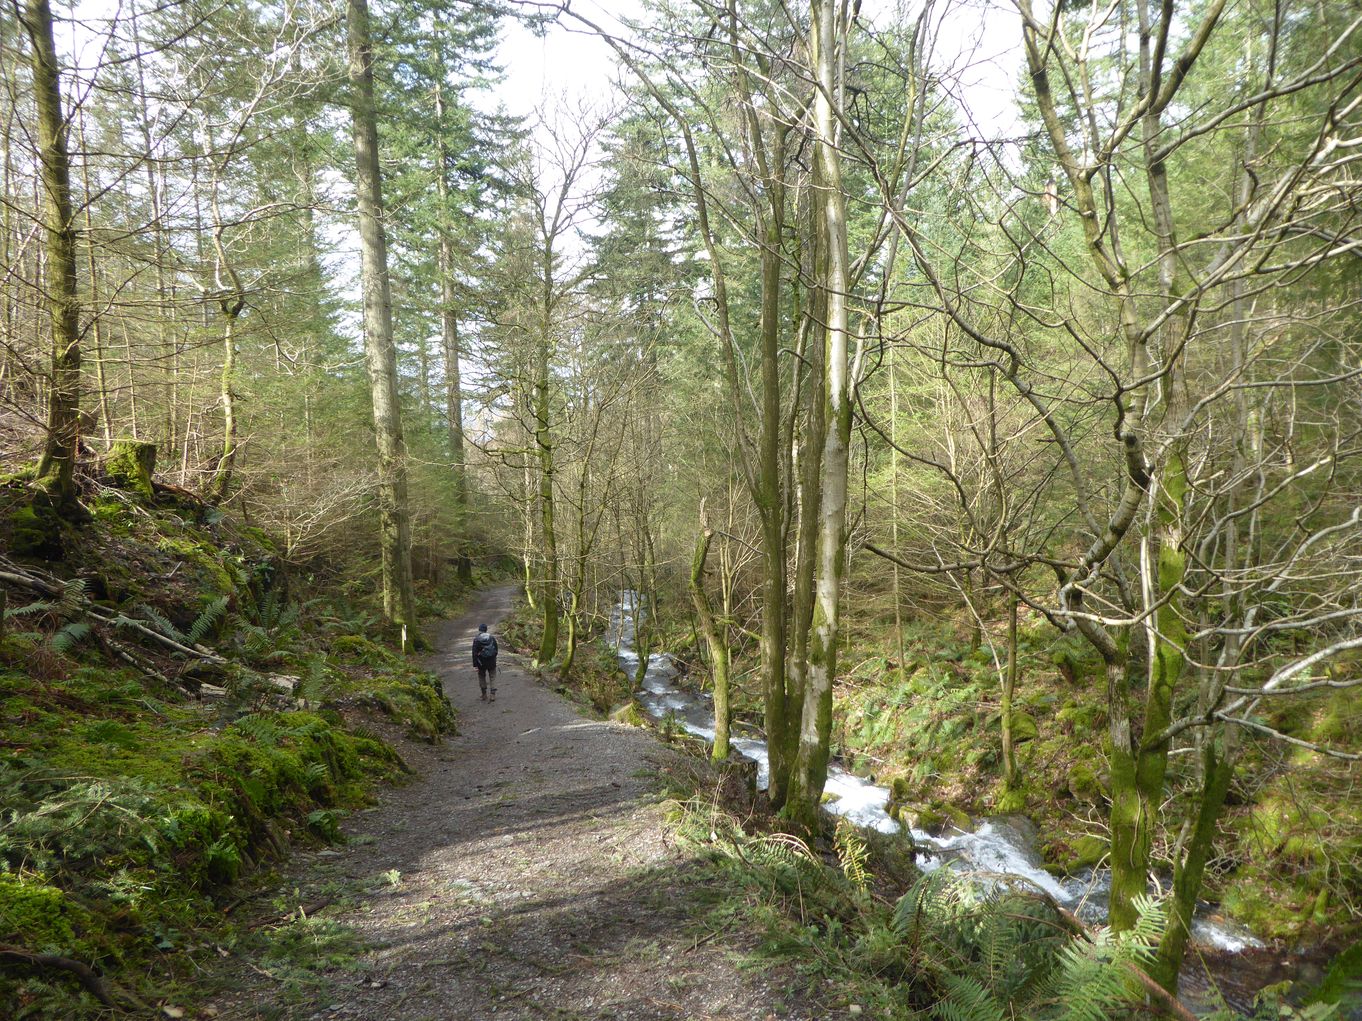 Dodd Wood trail